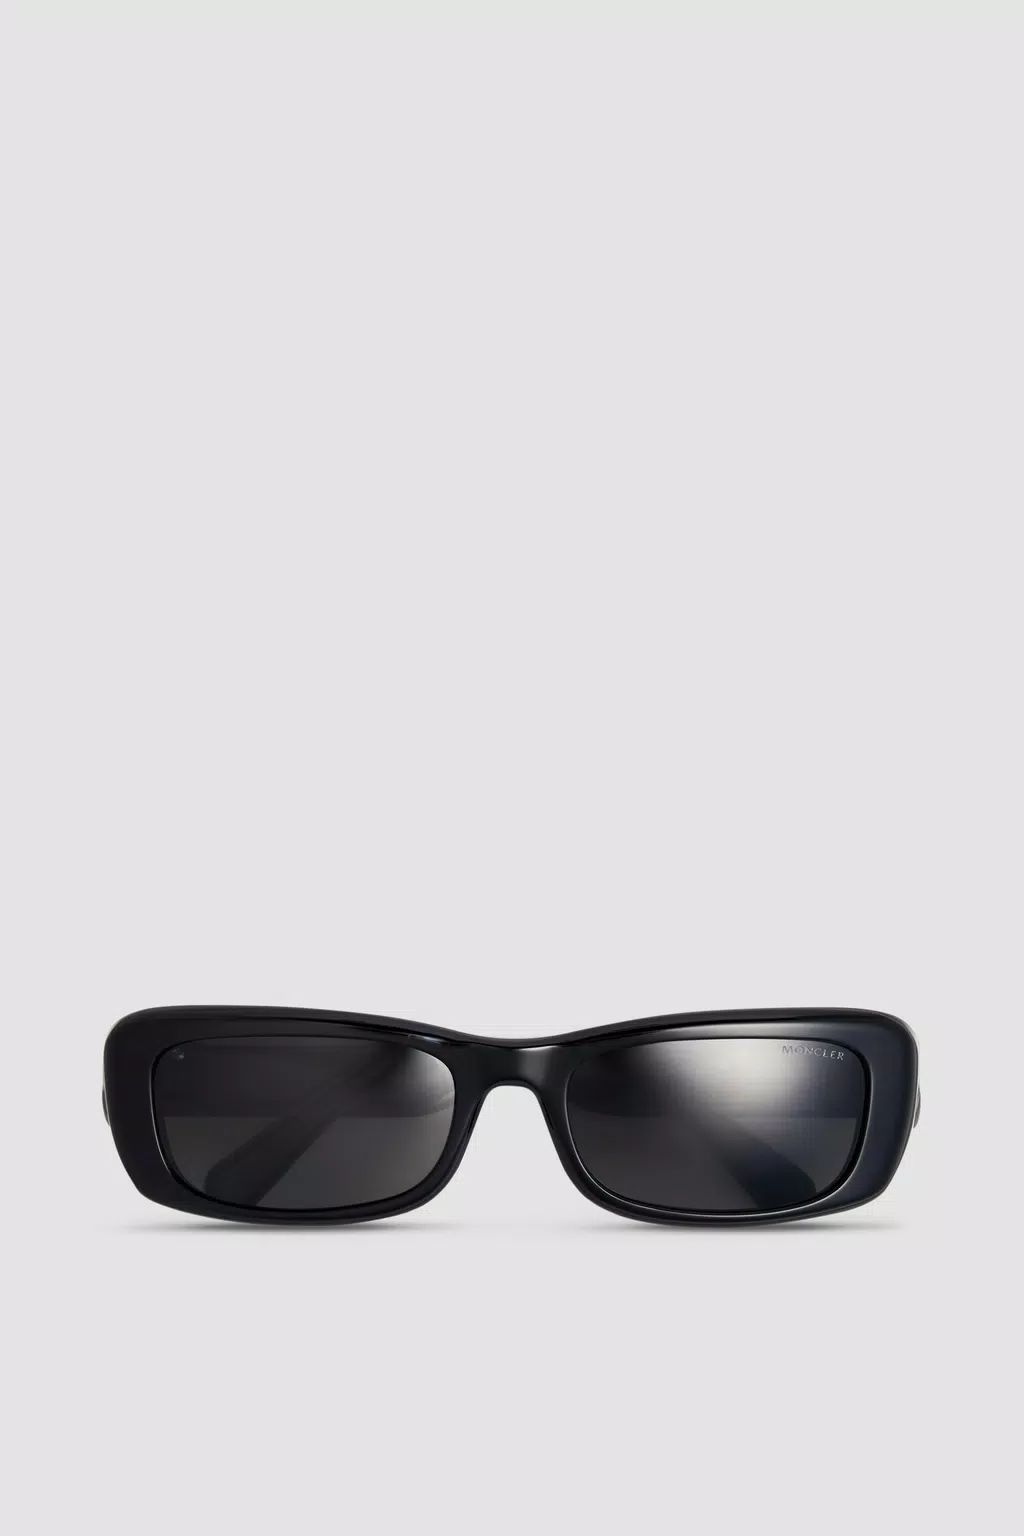 Minuit Rectangular Sunglasses Women Black & Dark Gray Moncler 1